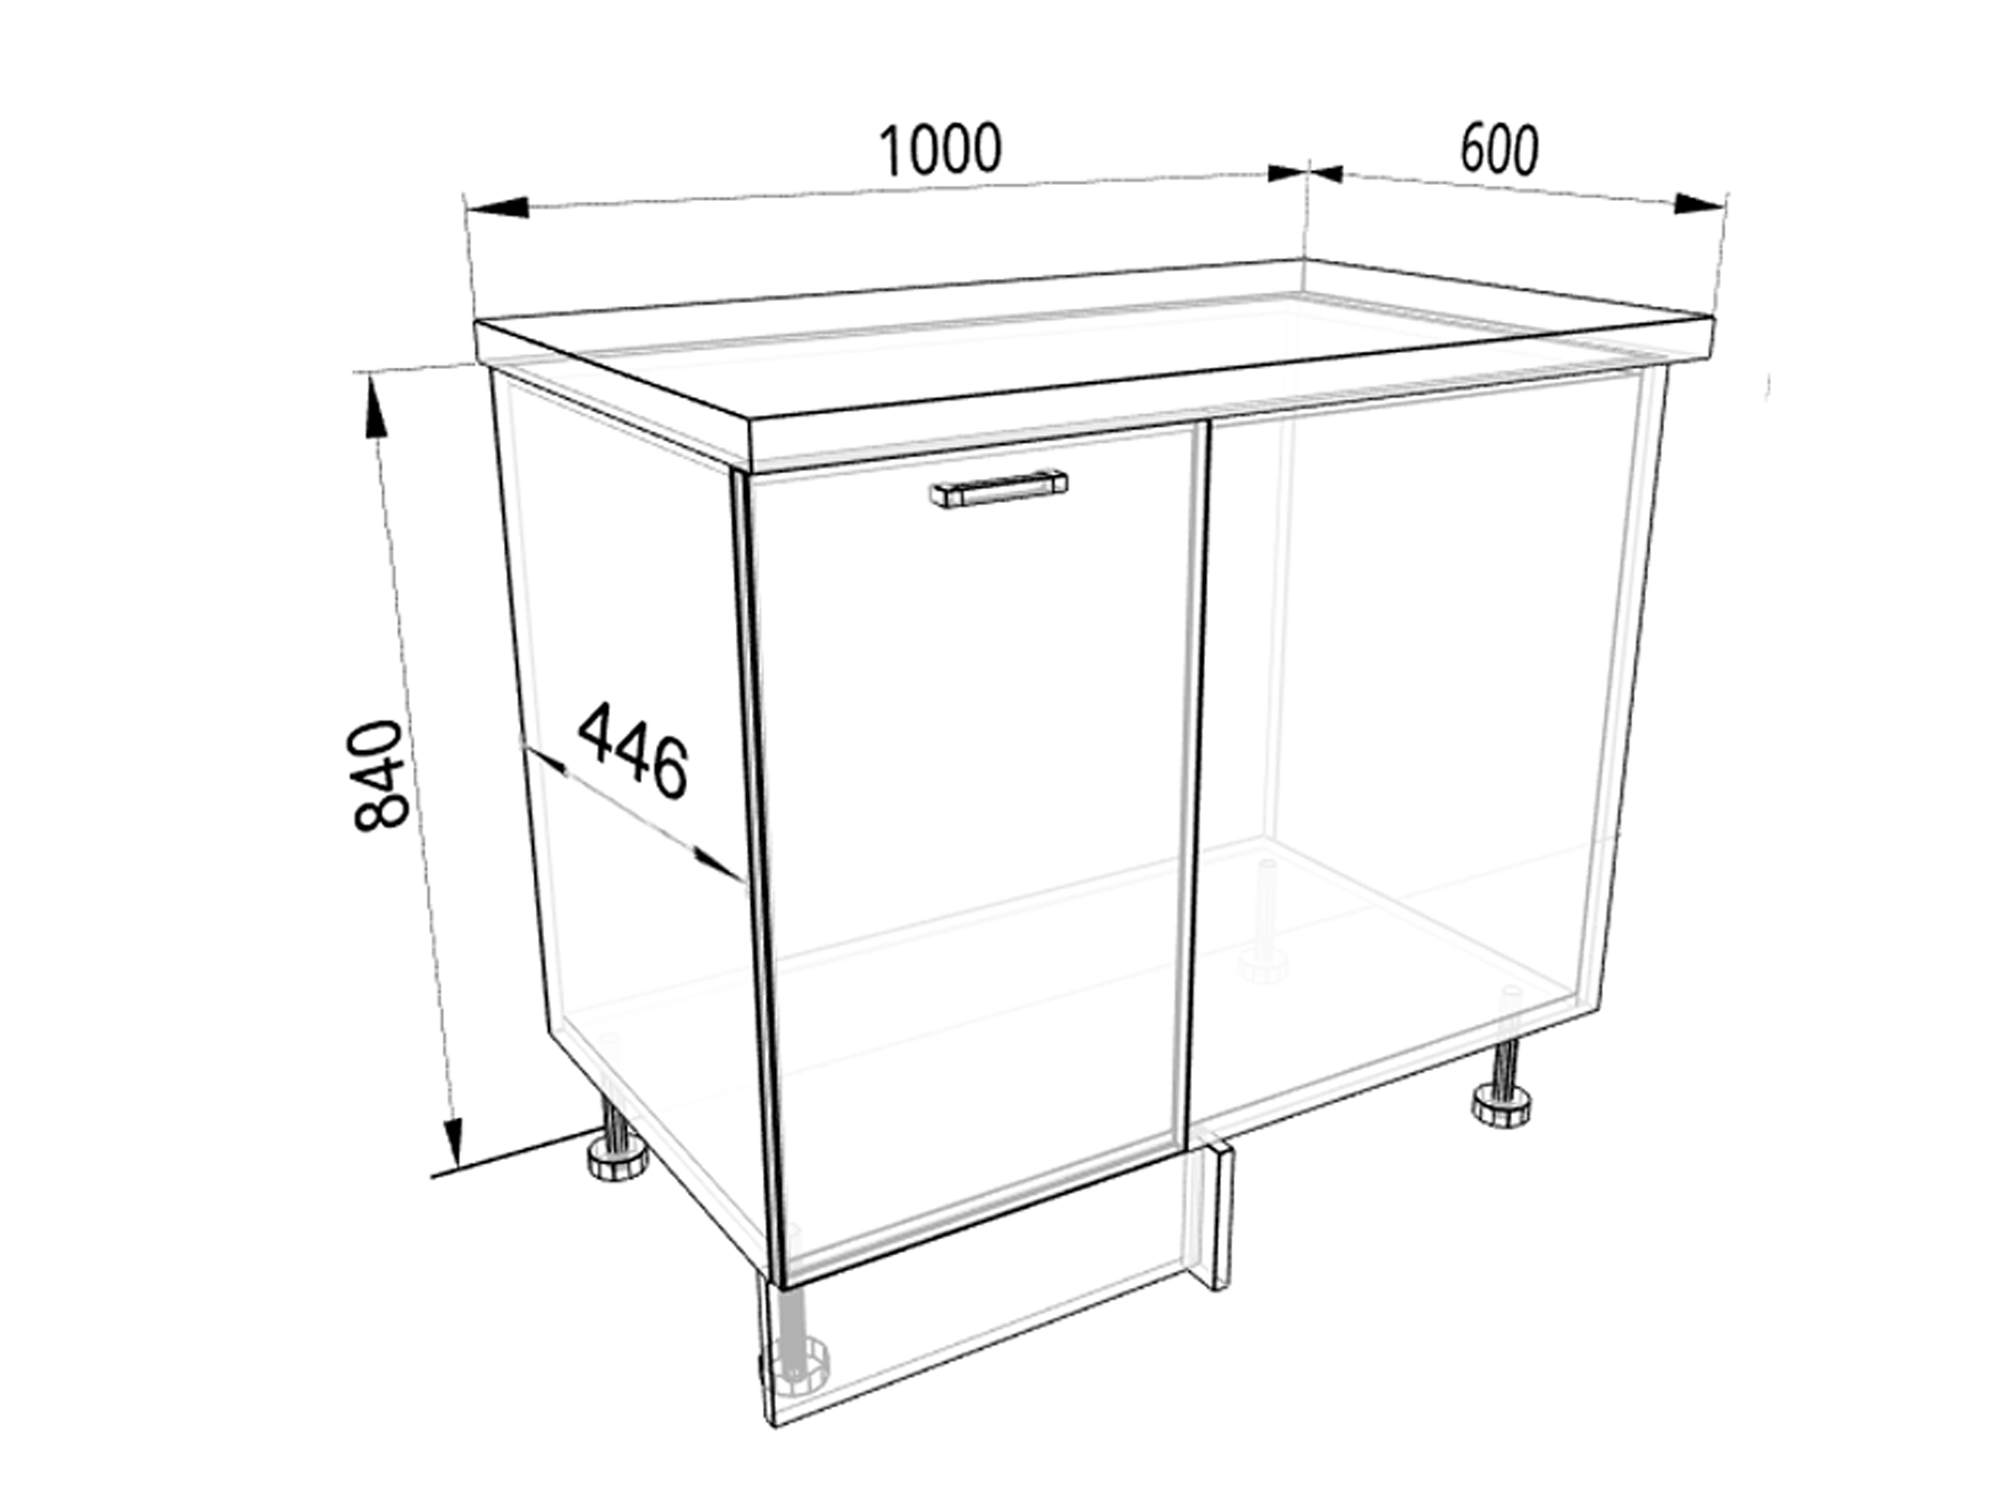 Размеры углового кухонного шкафа верхнего